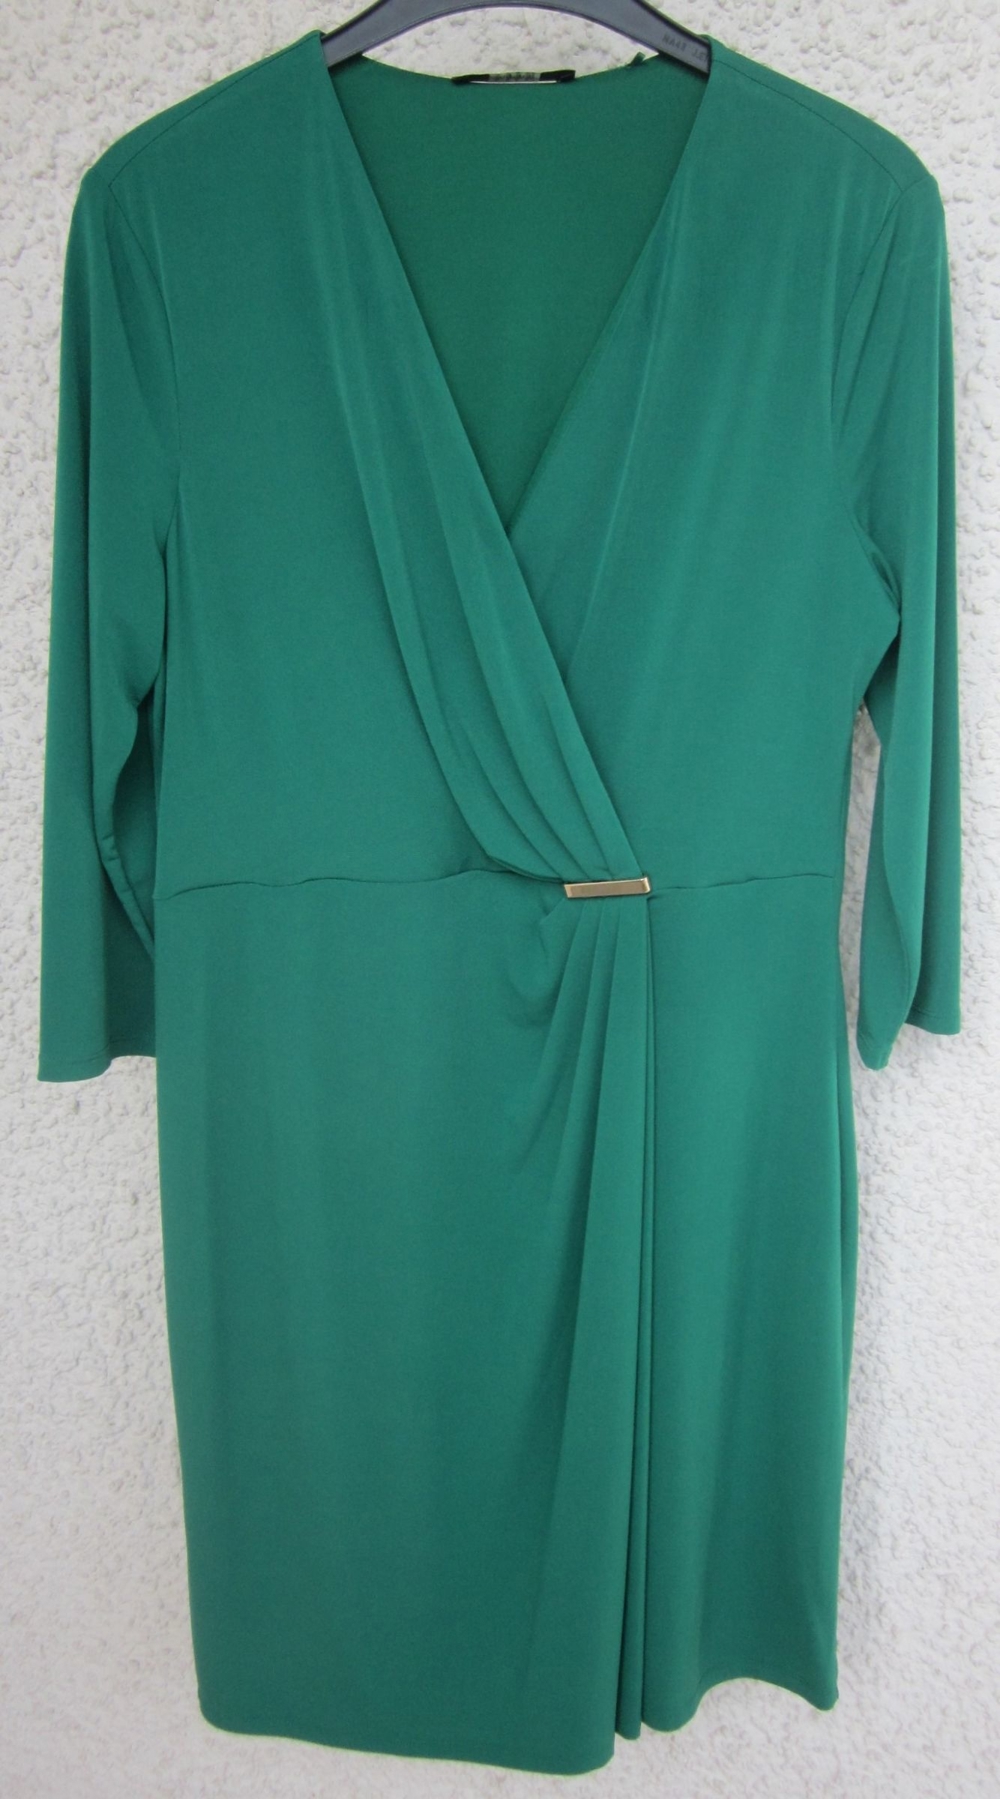 Gr. 44: Kleid, grün mit Schnalle, "ESPRIT", neuwertig